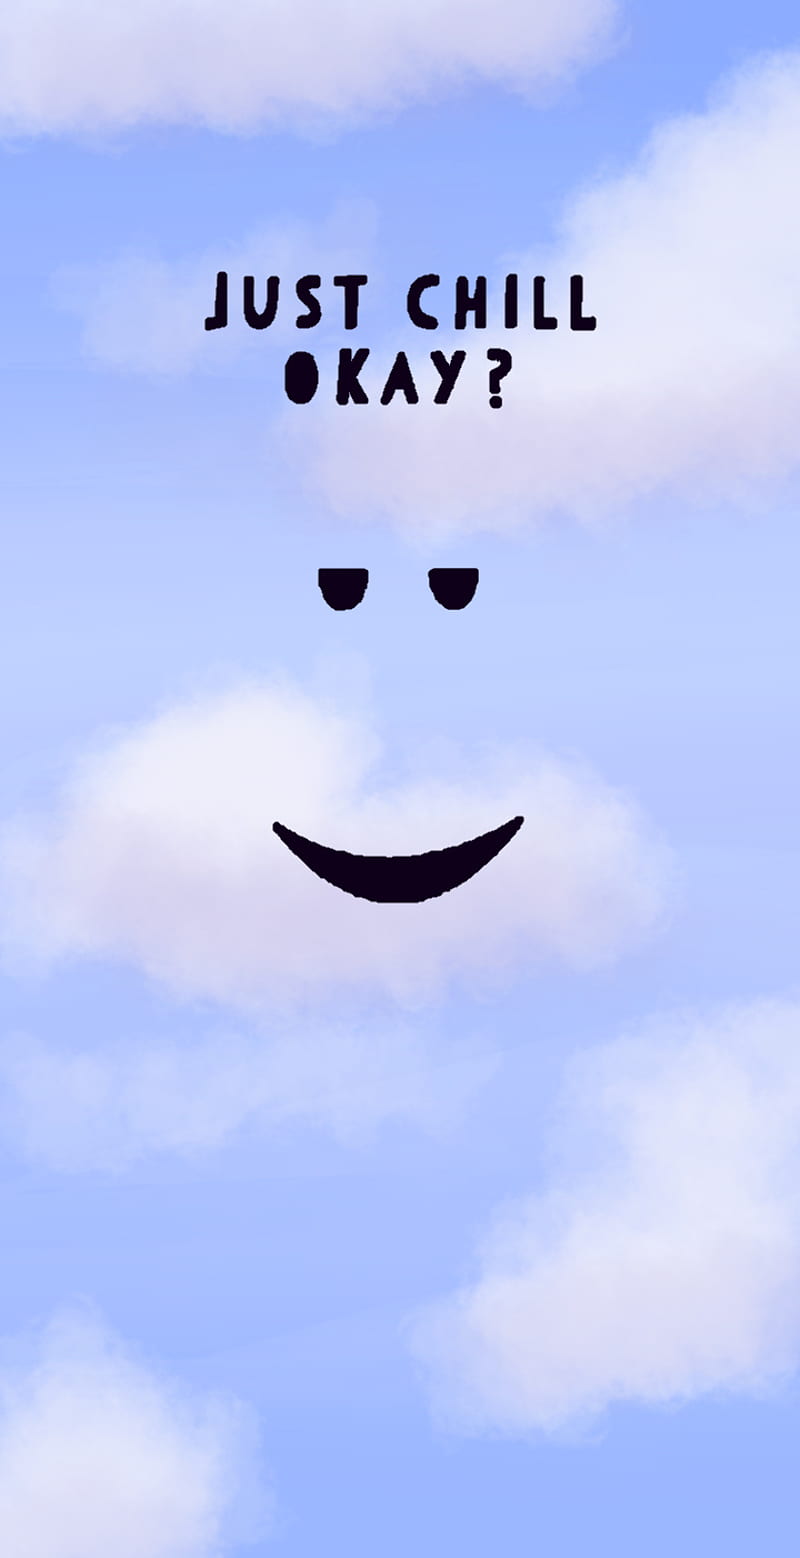 Roblox Aesthetic, cloud, juegos, sky, flowers, games, cute